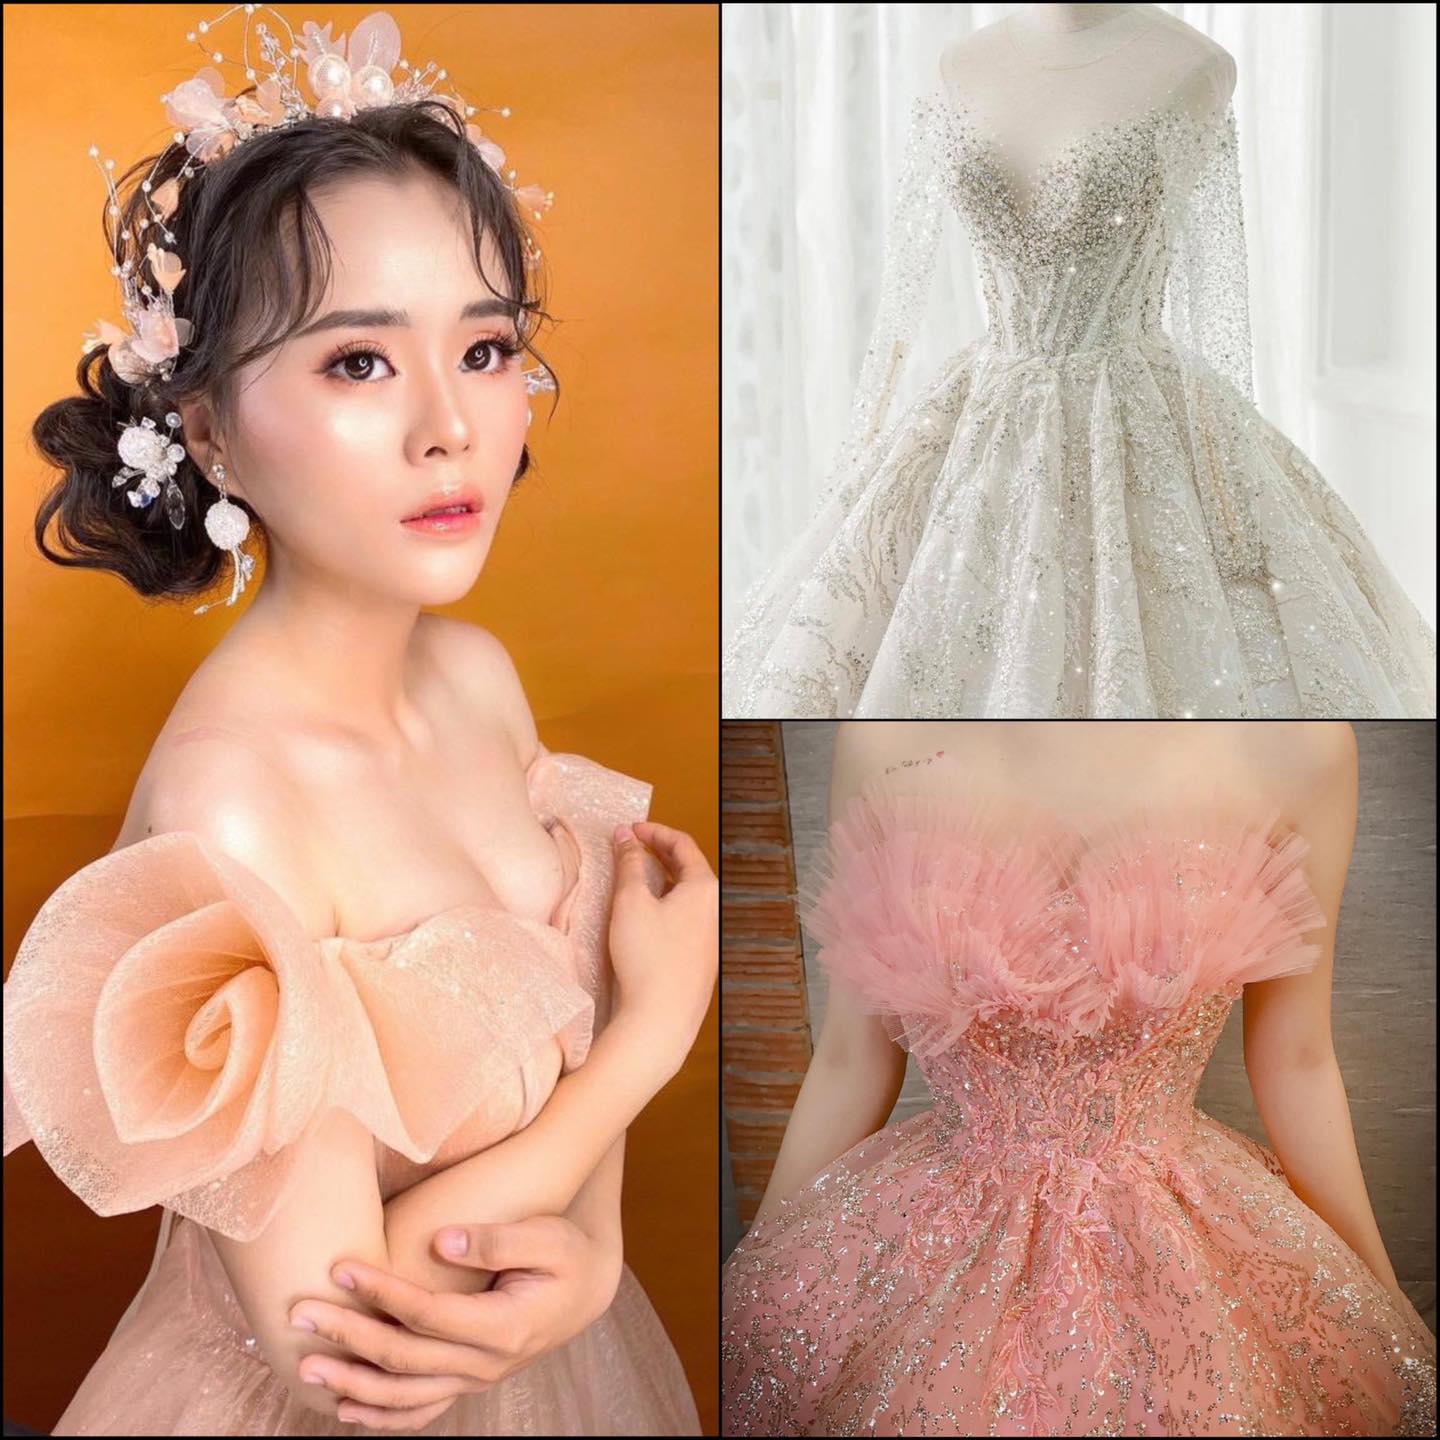 Top 7 tiệm trang điểm cô dâu đẹp nhất tại Tiền Giang -  Ray Bridal